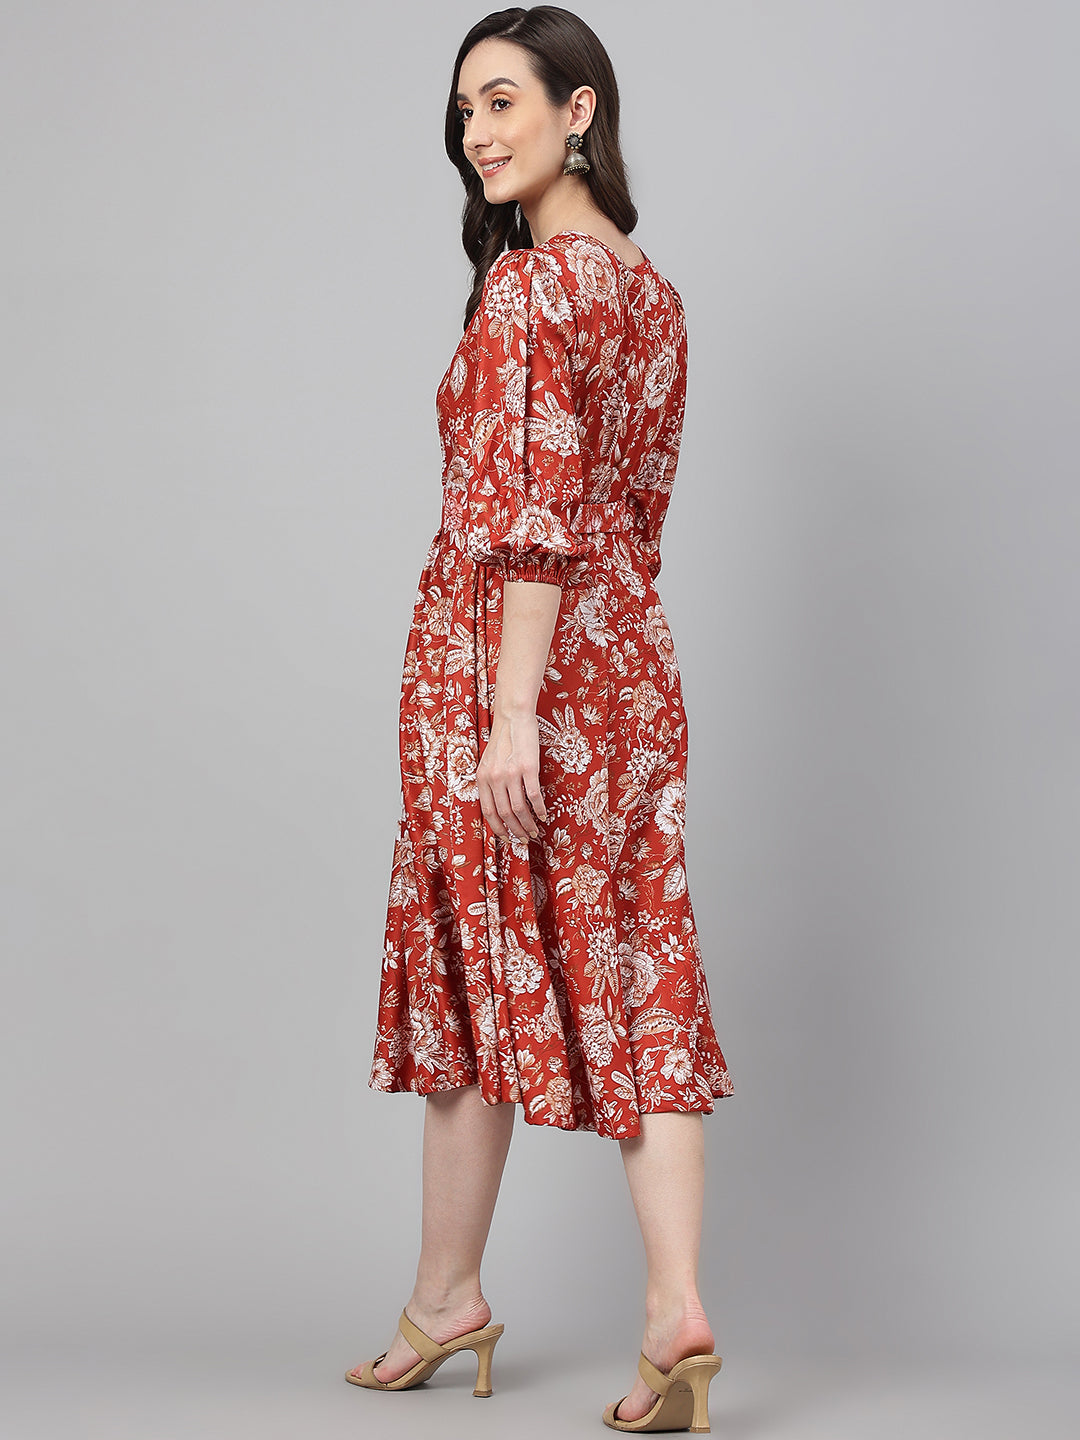 Women's Digital Printed Rust Crepe Dress - Janasya